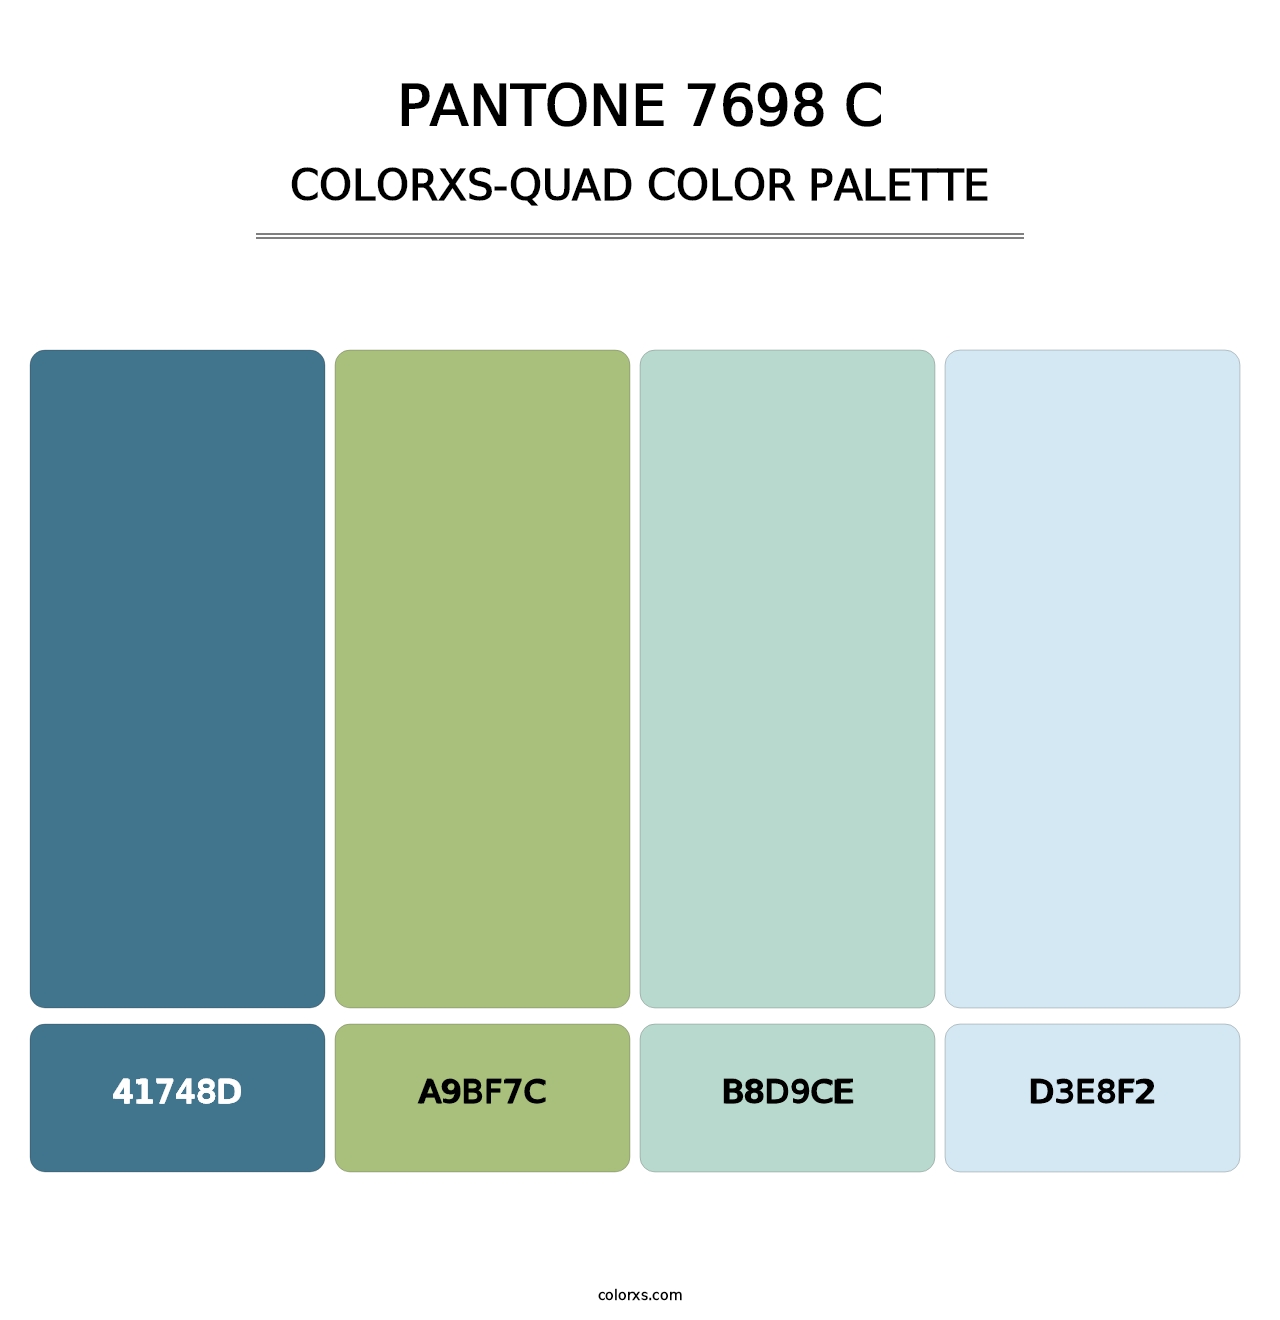 PANTONE 7698 C - Colorxs Quad Palette